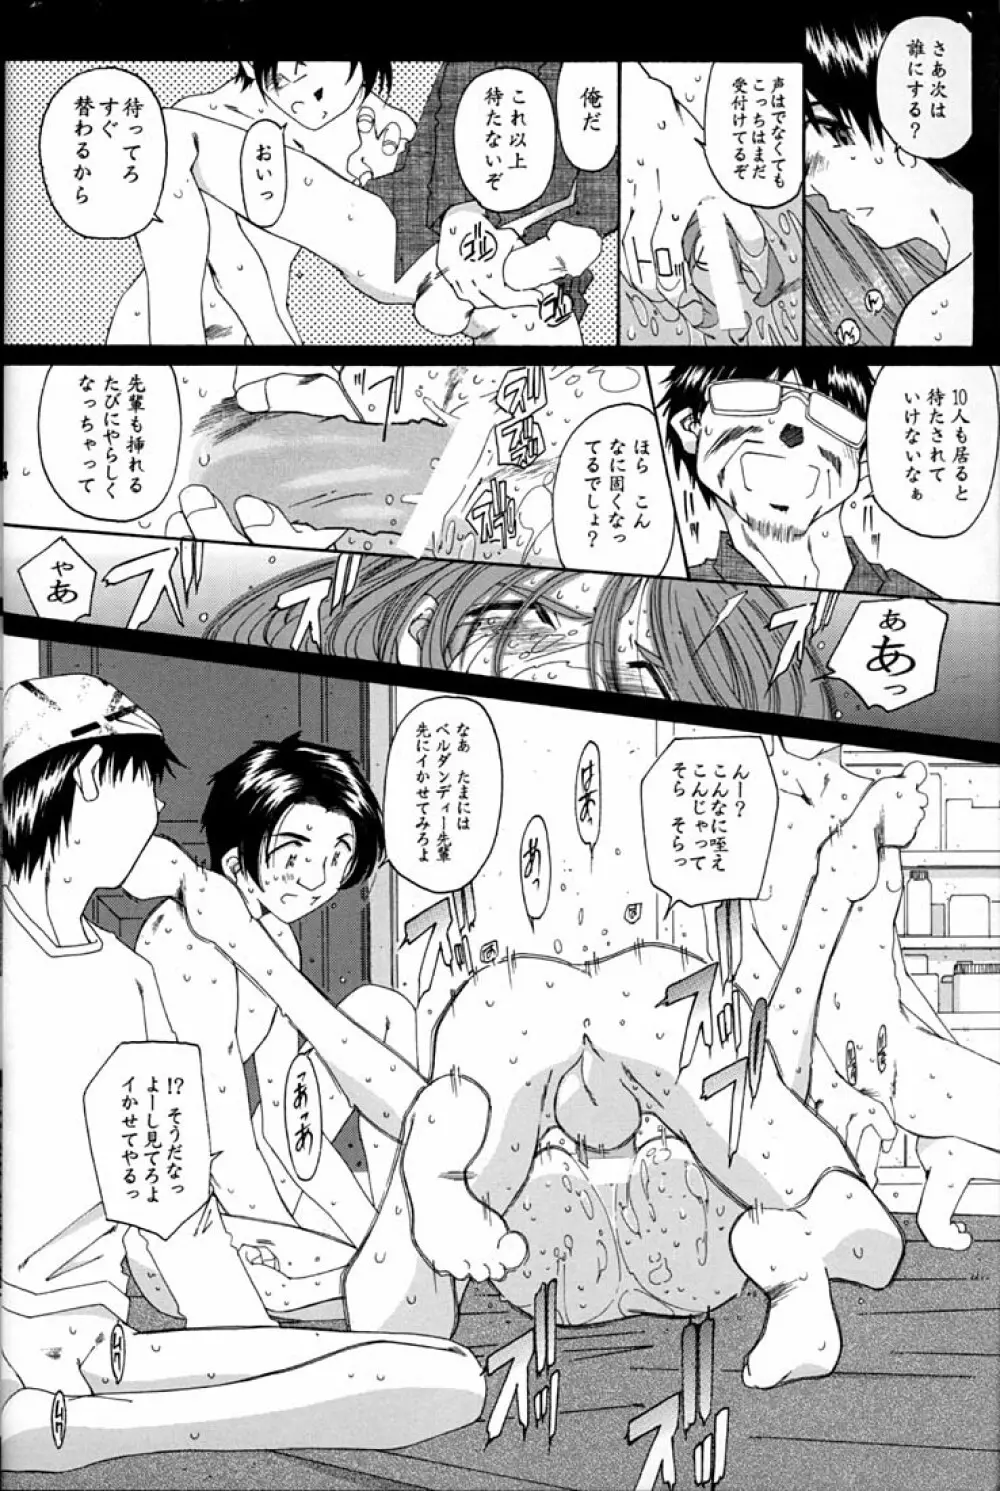 Fujishima Spirits 2 13ページ